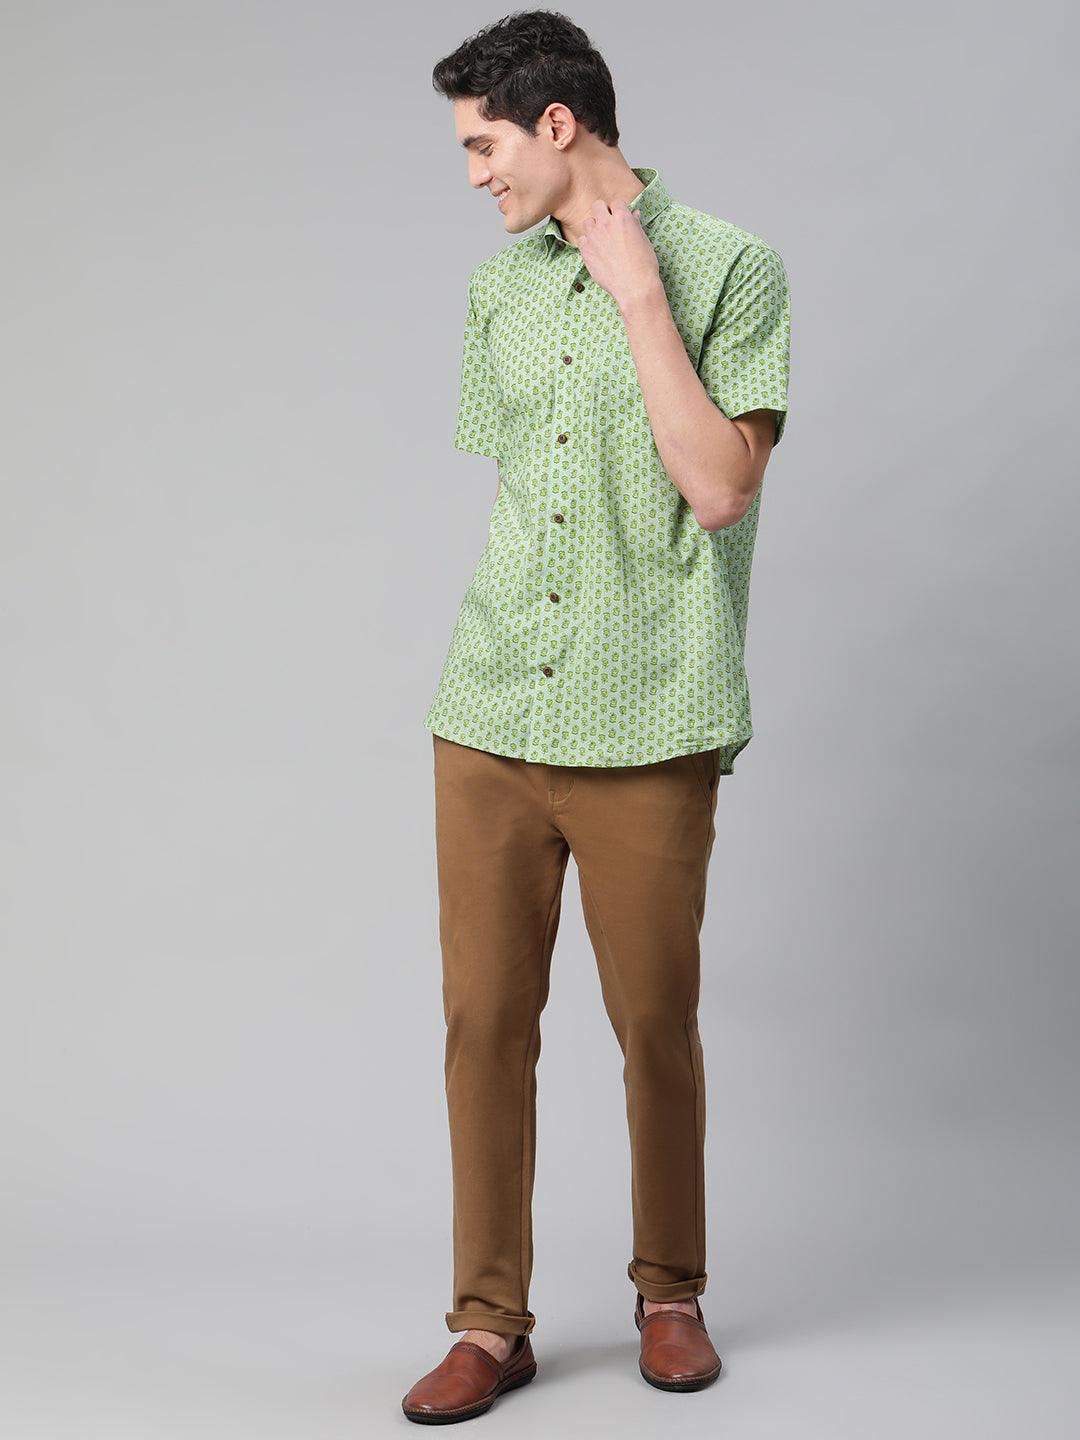 Millennial Men Light Green  & Parrot Green Cotton  Half Sleeve Shirt for Men-MMH0188 - divenaworld.com